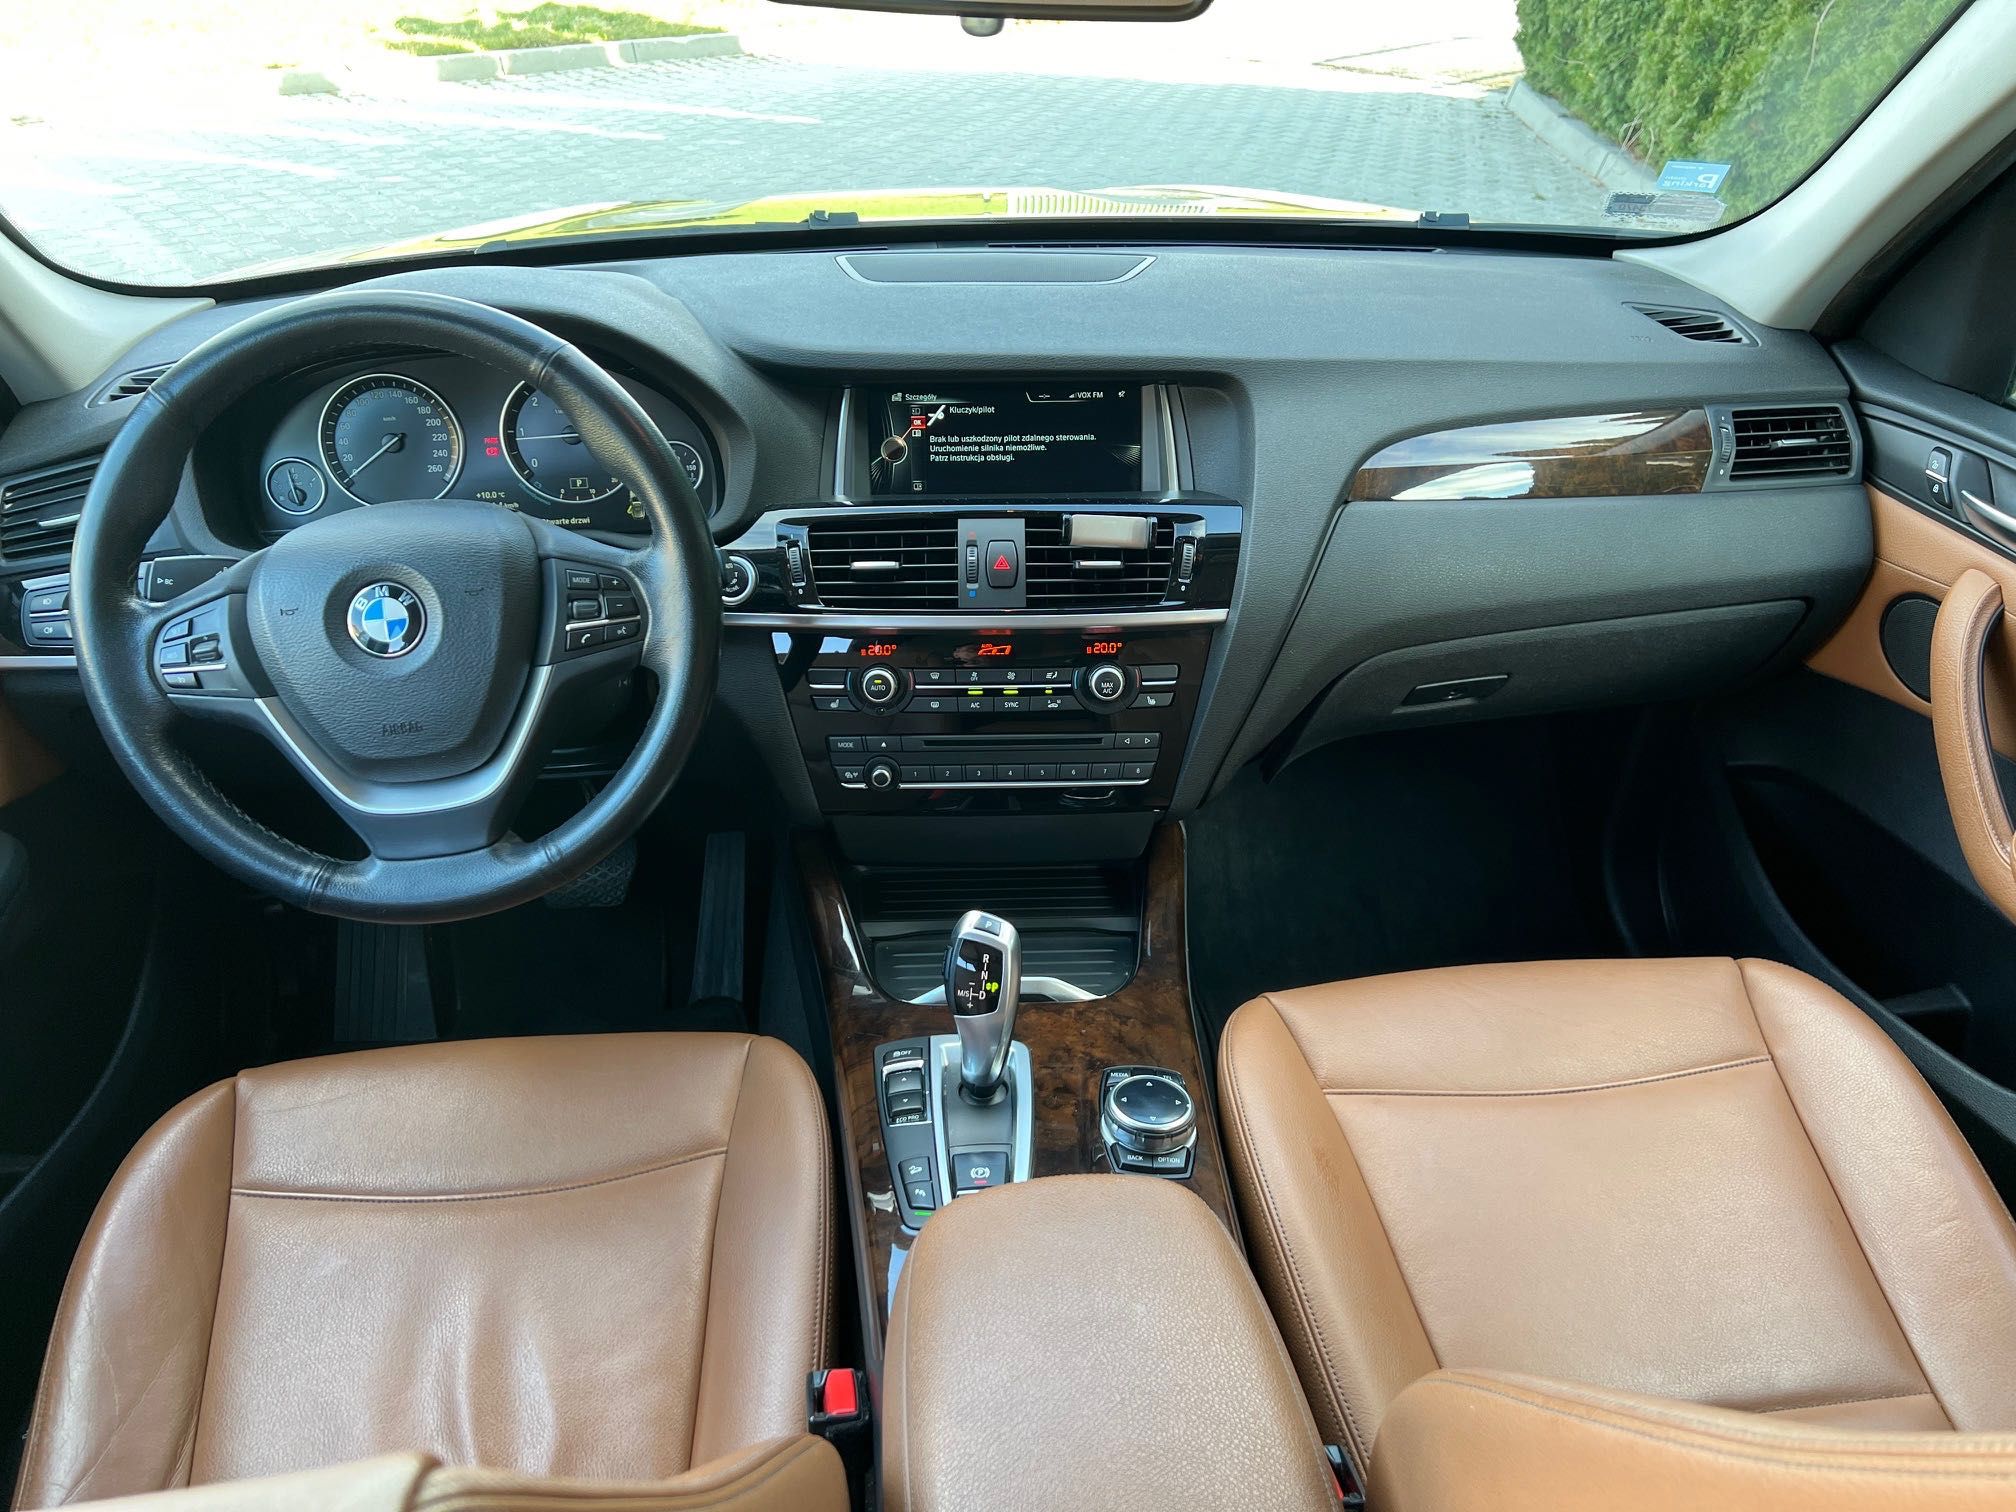 BMW X3 2014 rok 2.0d salon Polska, VAT 23%, I właść ASO bezwypadk.